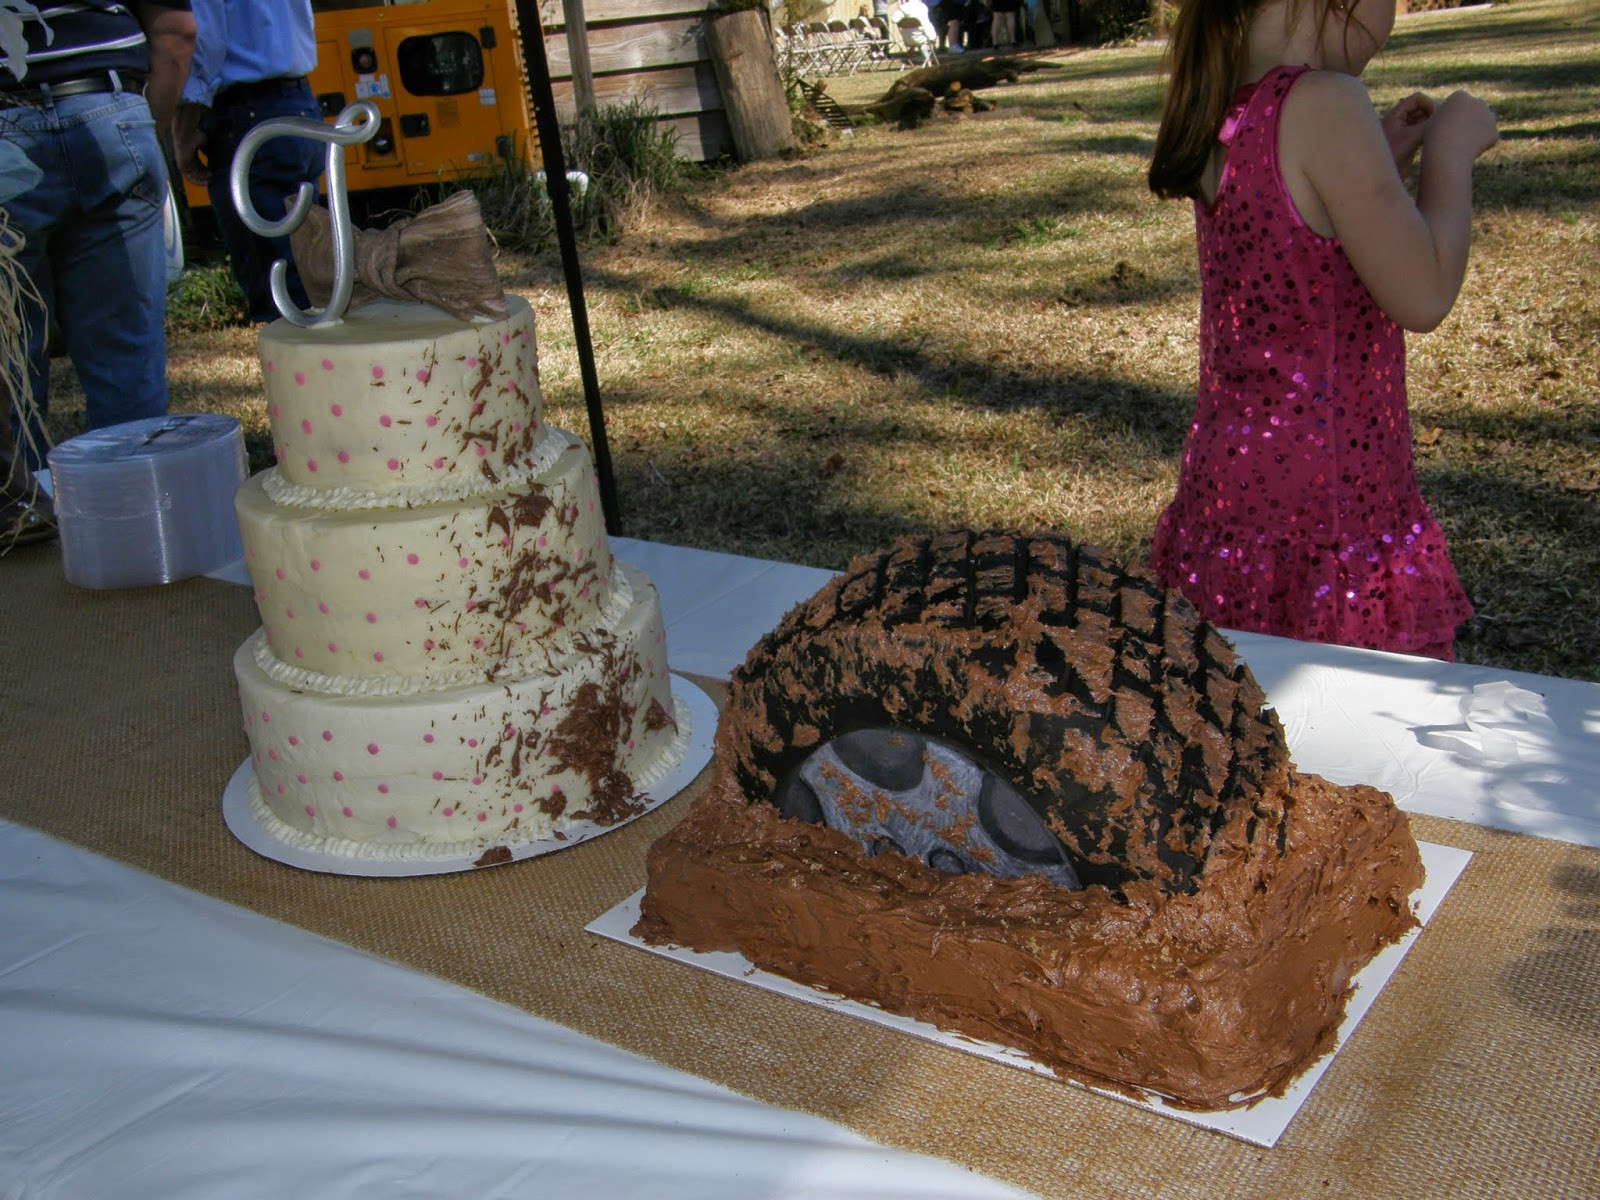 Mudding Wedding Cakes
 Mrs Lydia s Kitchen Let s Go Mudding Wedding Cake Style